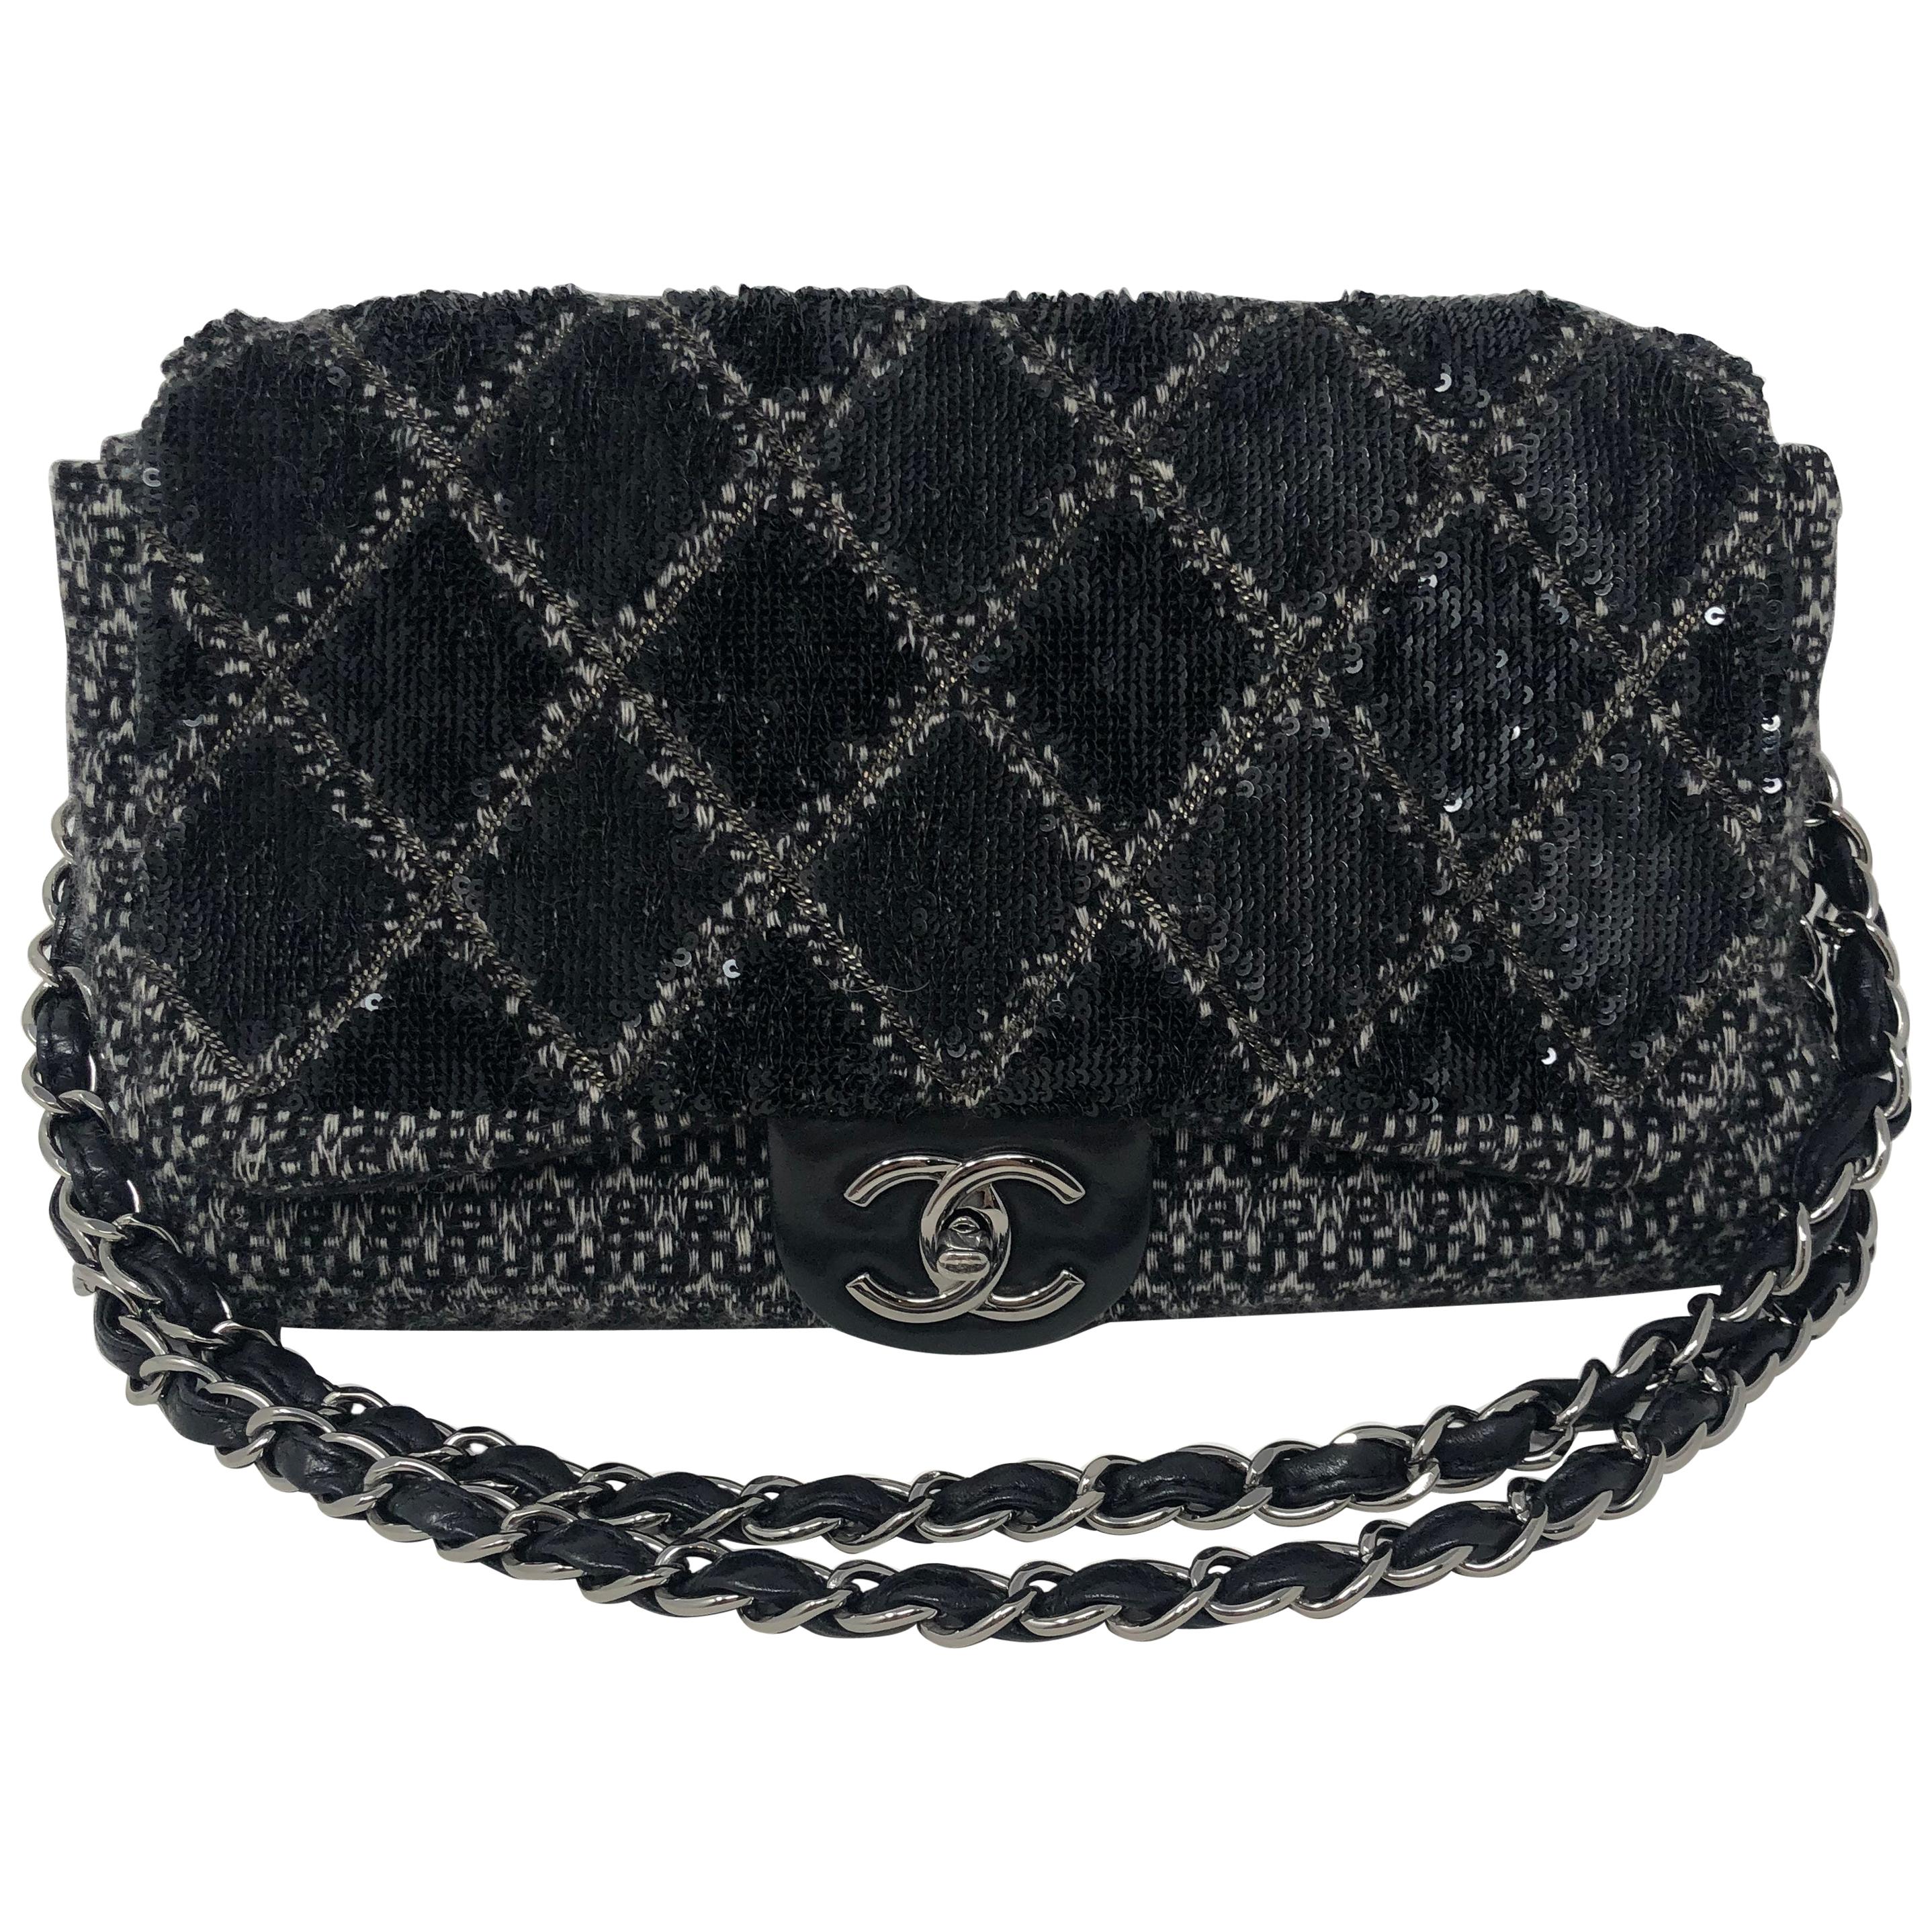 Chanel Black Jumbo Tweed Bag